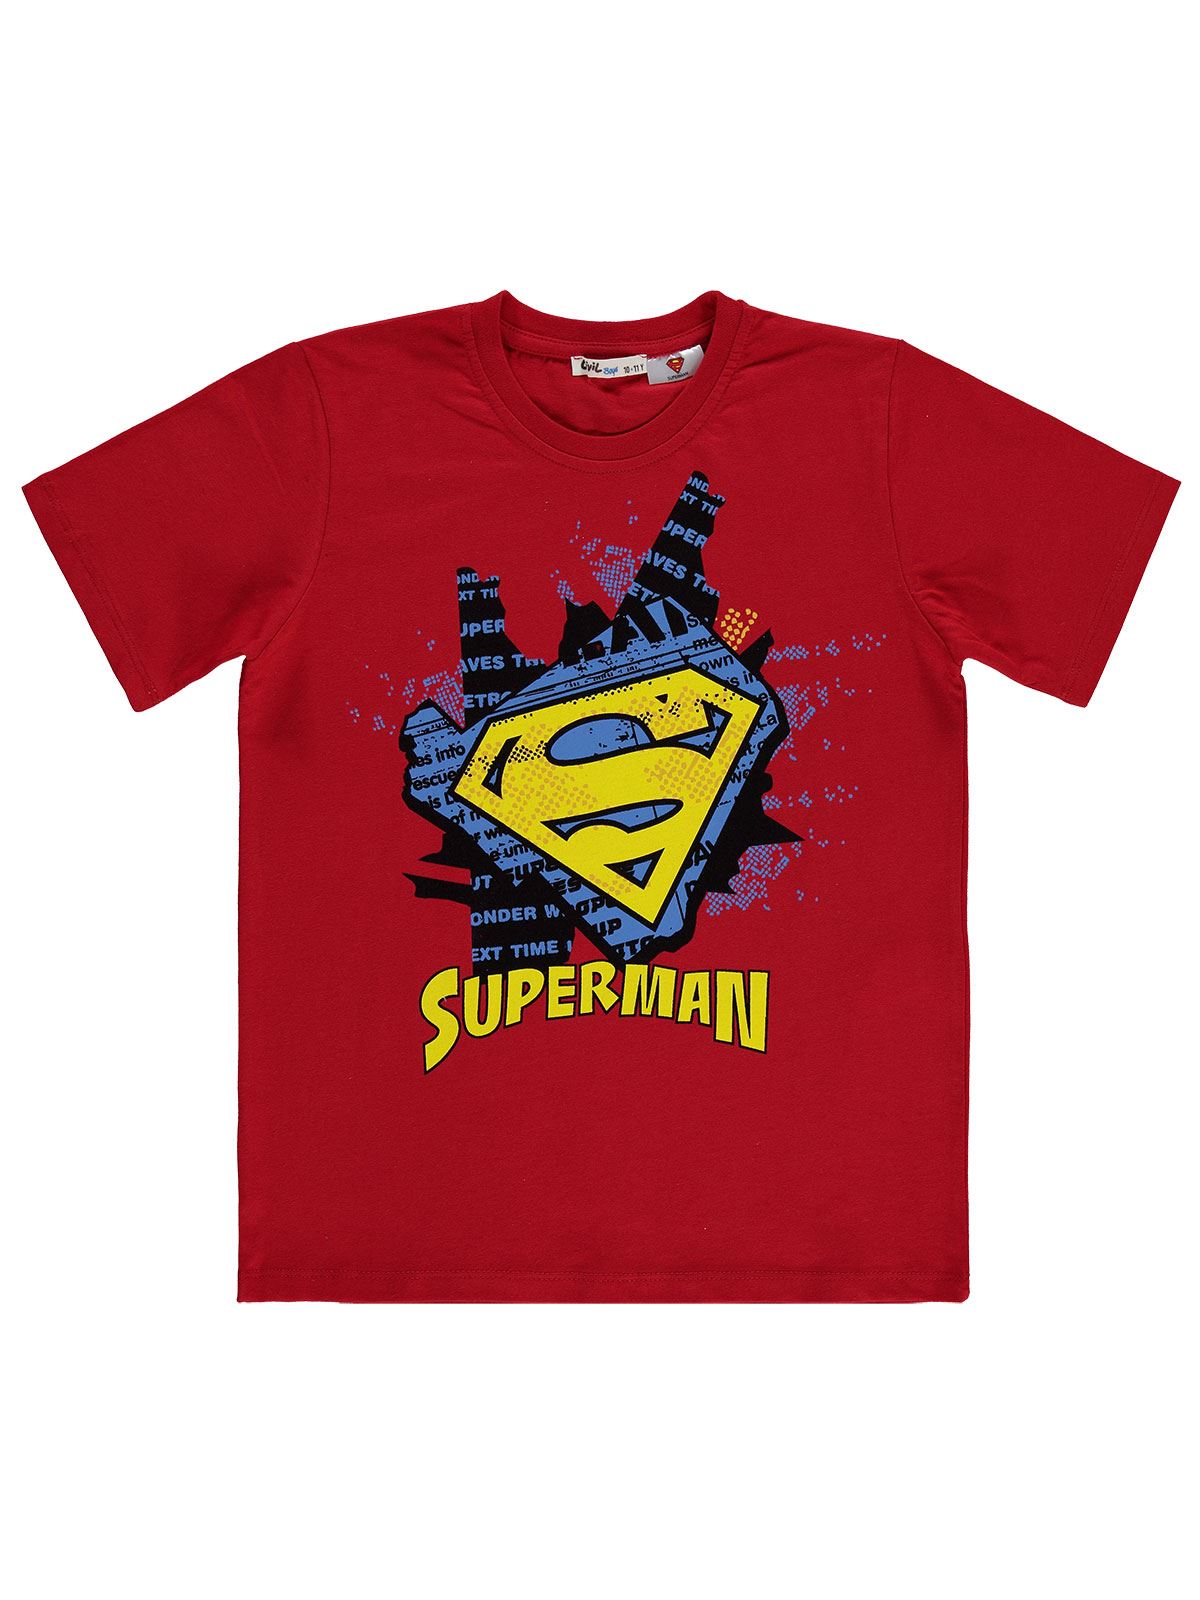 Süperman Erkek Çocuk Tişört 10-13 Yaş Kırmızı 